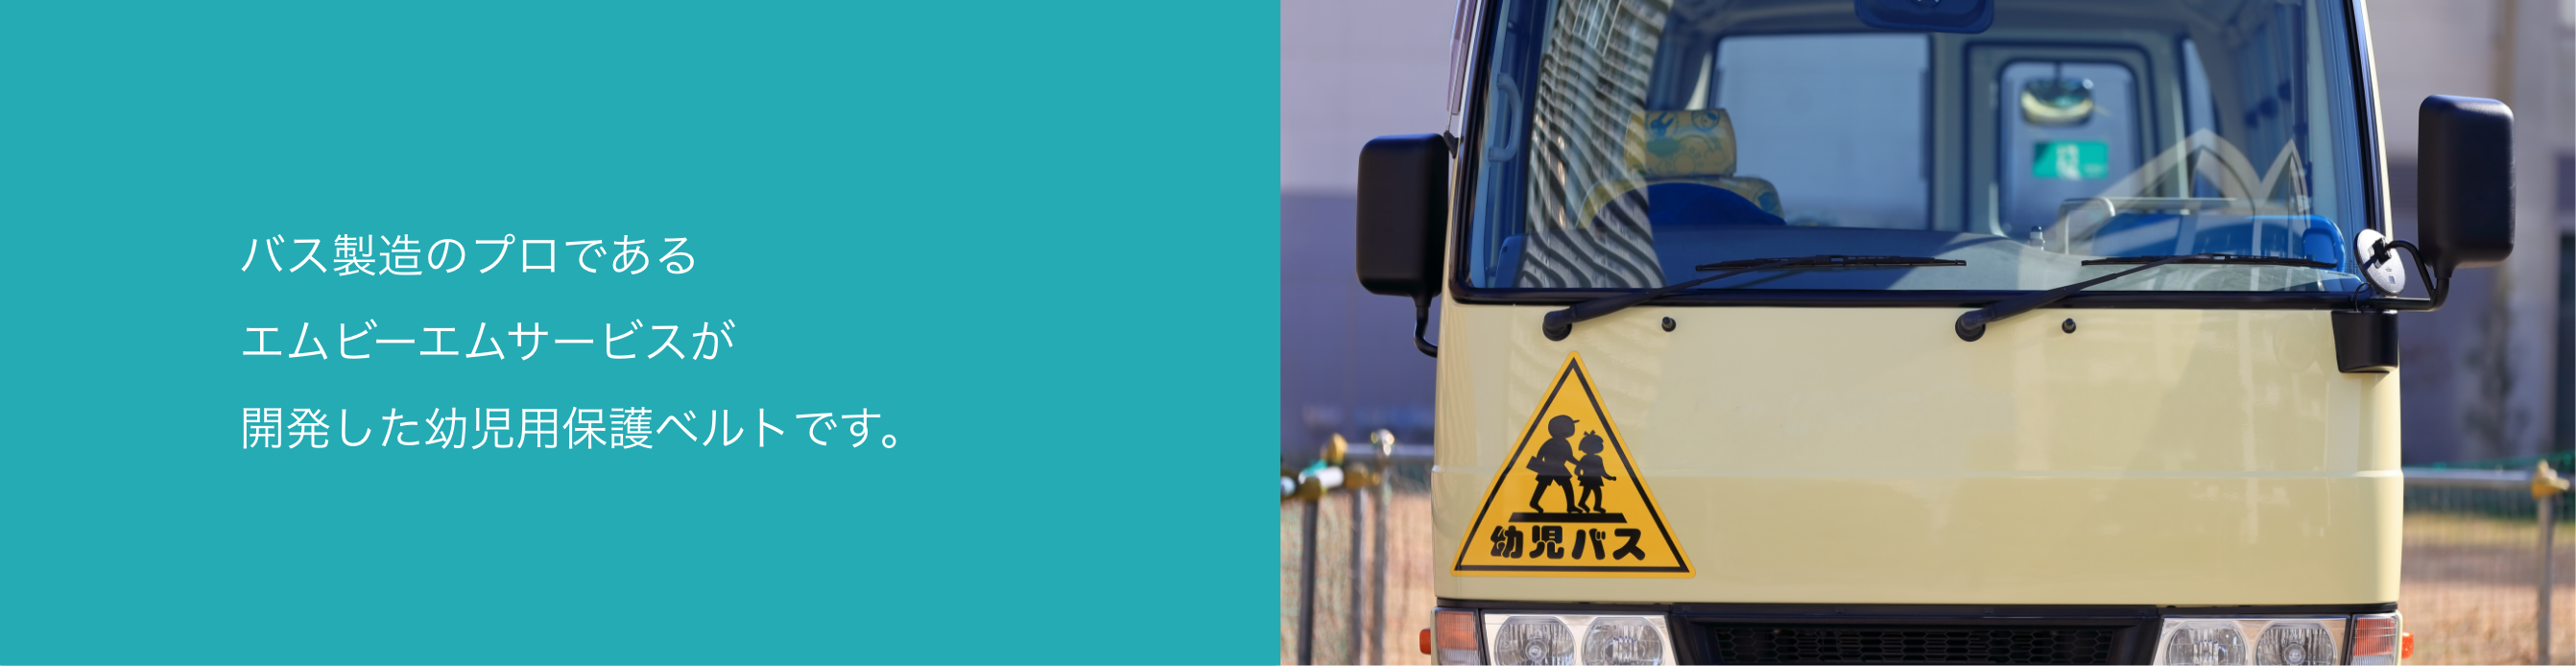 バス製造のプロであるエムビーエムサービスが開発した幼児用保護ベルトです。